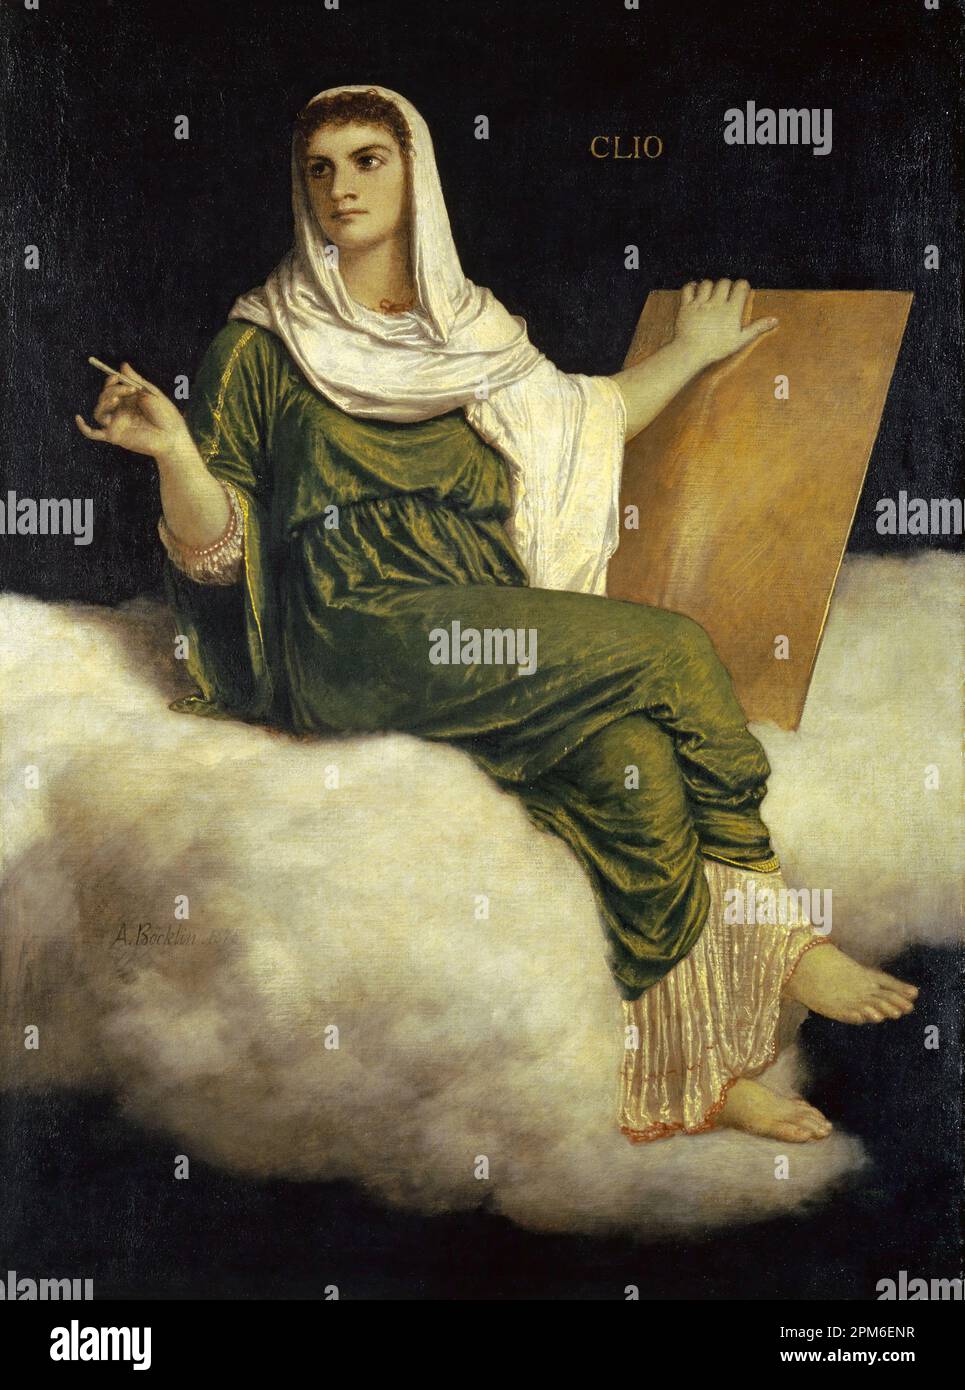 La Muse Clio, la dea della storia (1875) dipinta dal pittore simbolista svizzero Arnold Böcklin del 19th ° secolo Foto Stock